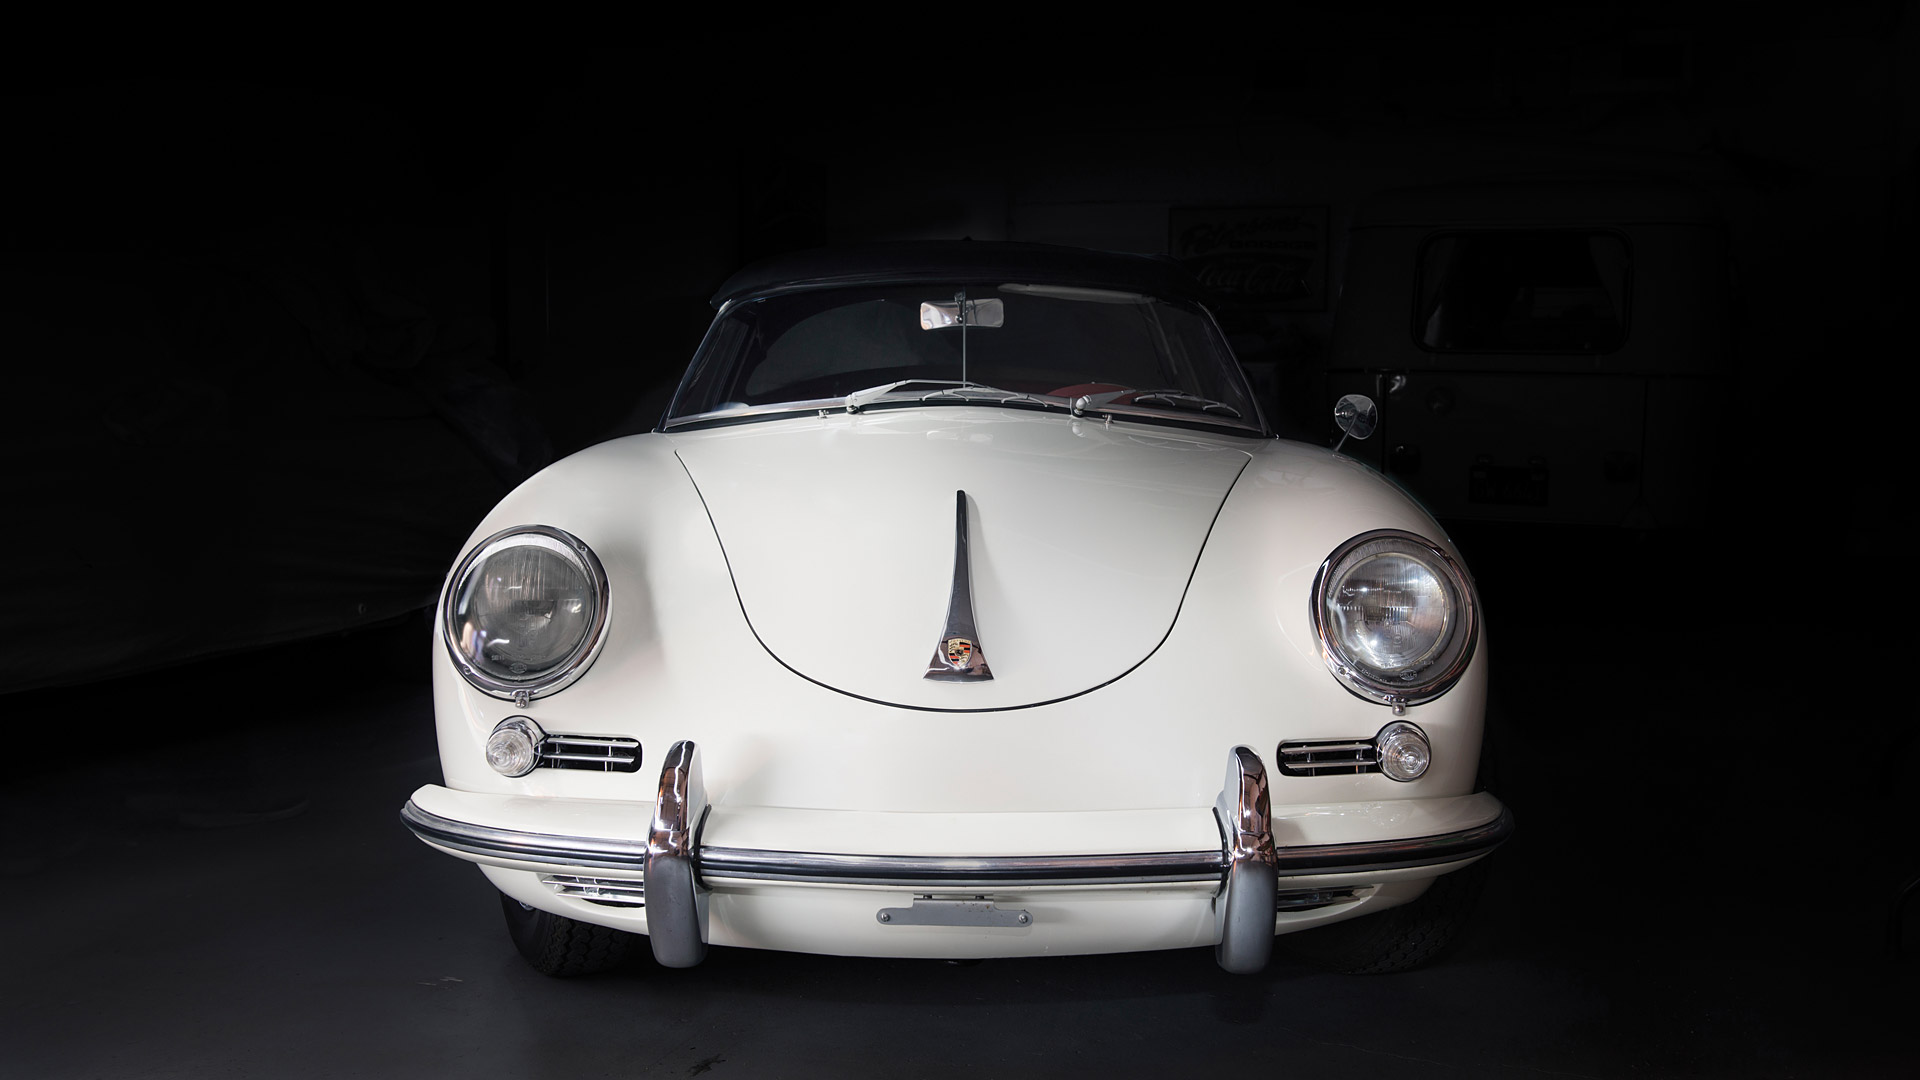  1959 Porsche 356B Wallpaper.